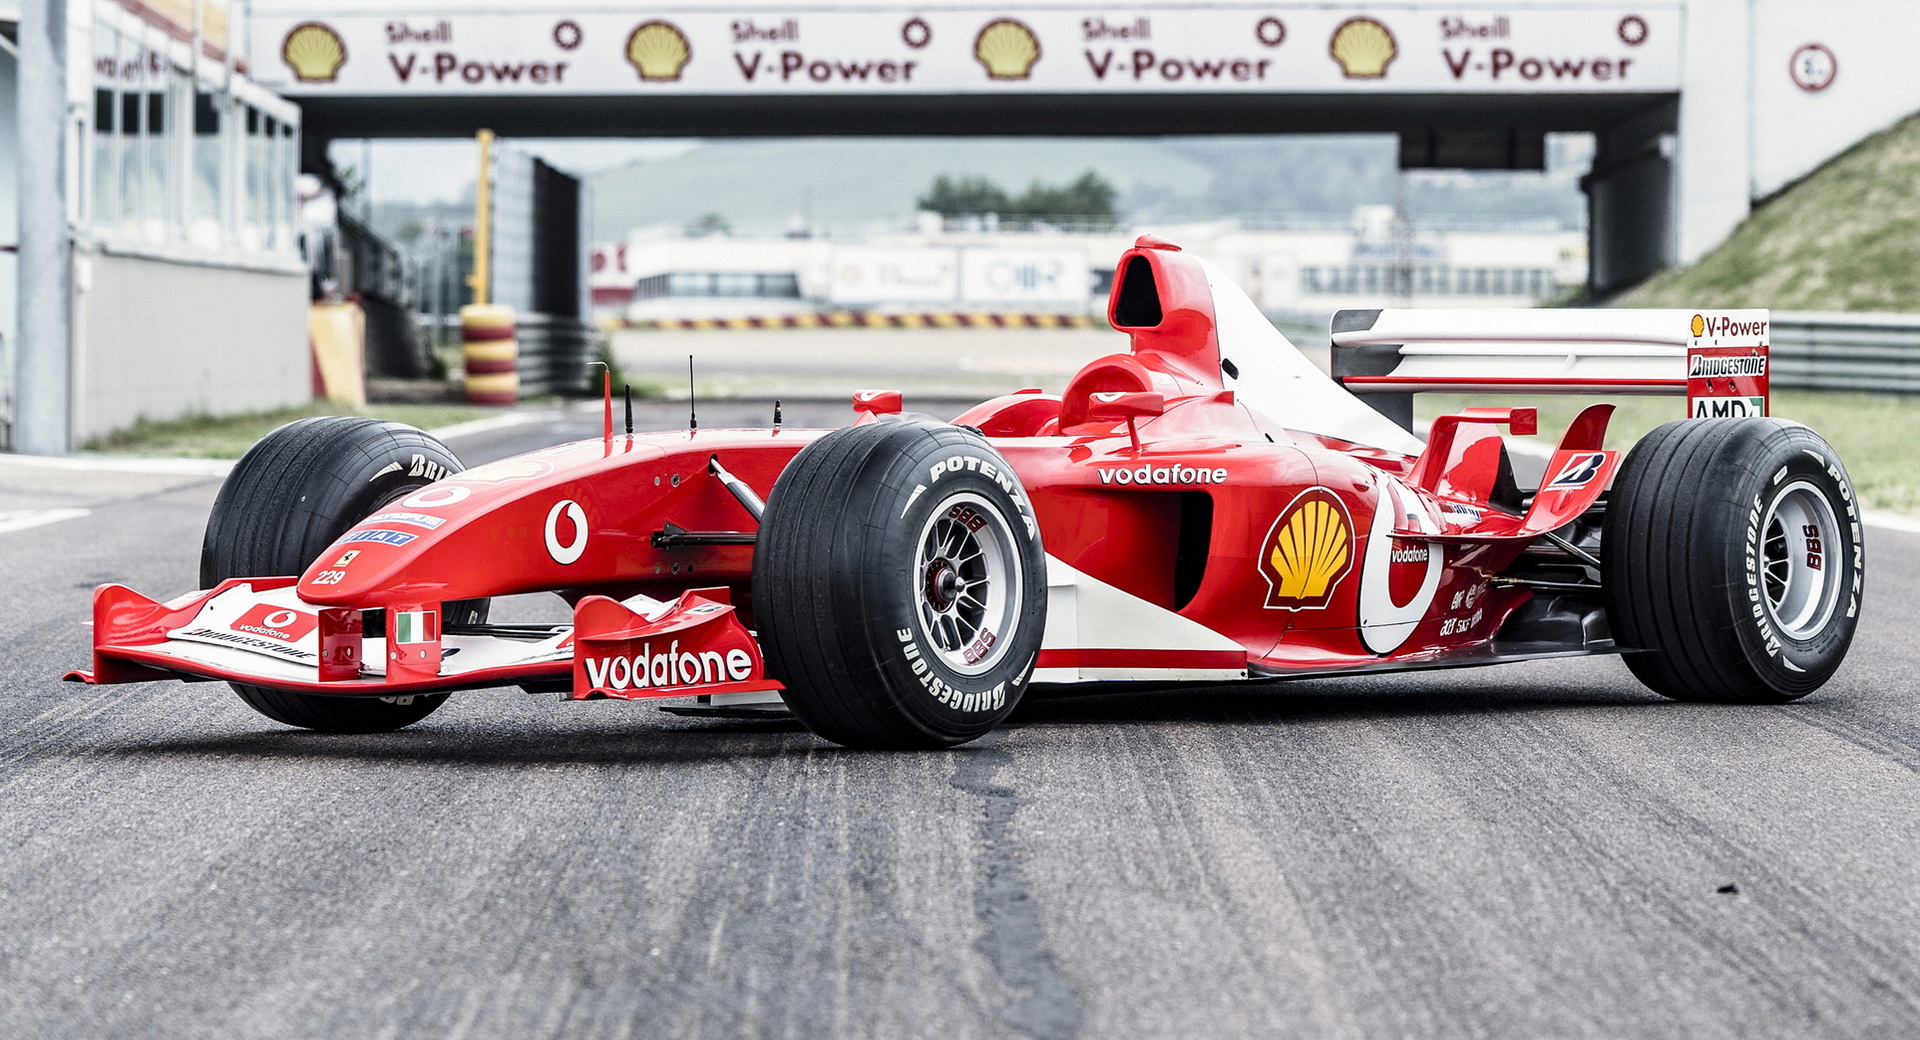 Rekordáron kelt el Schumacher legendás Ferrari versenyautója